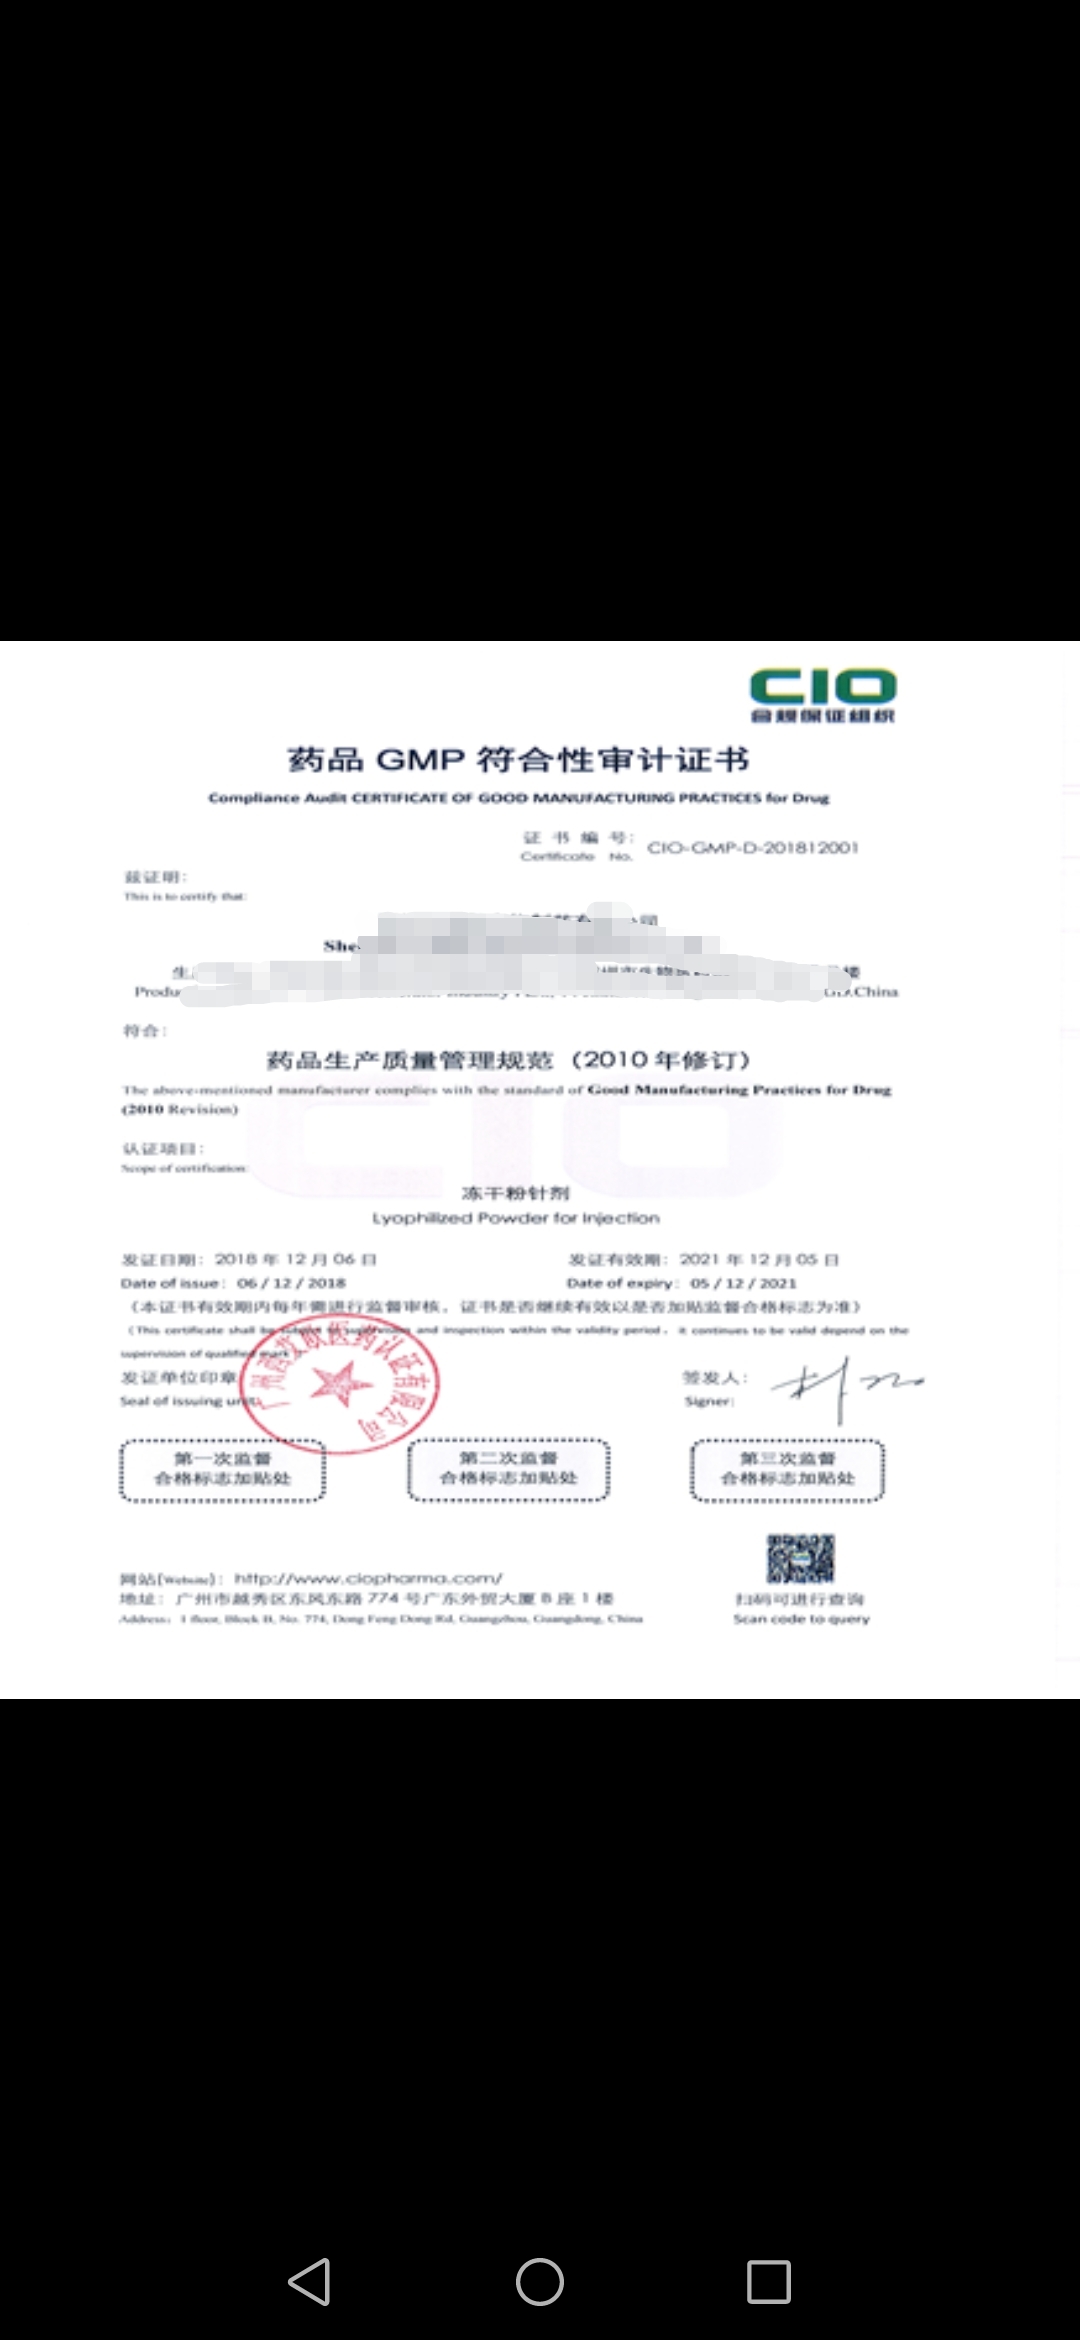 脱敏-GMP符合性评估证书-CIO合规保证组织.jpg